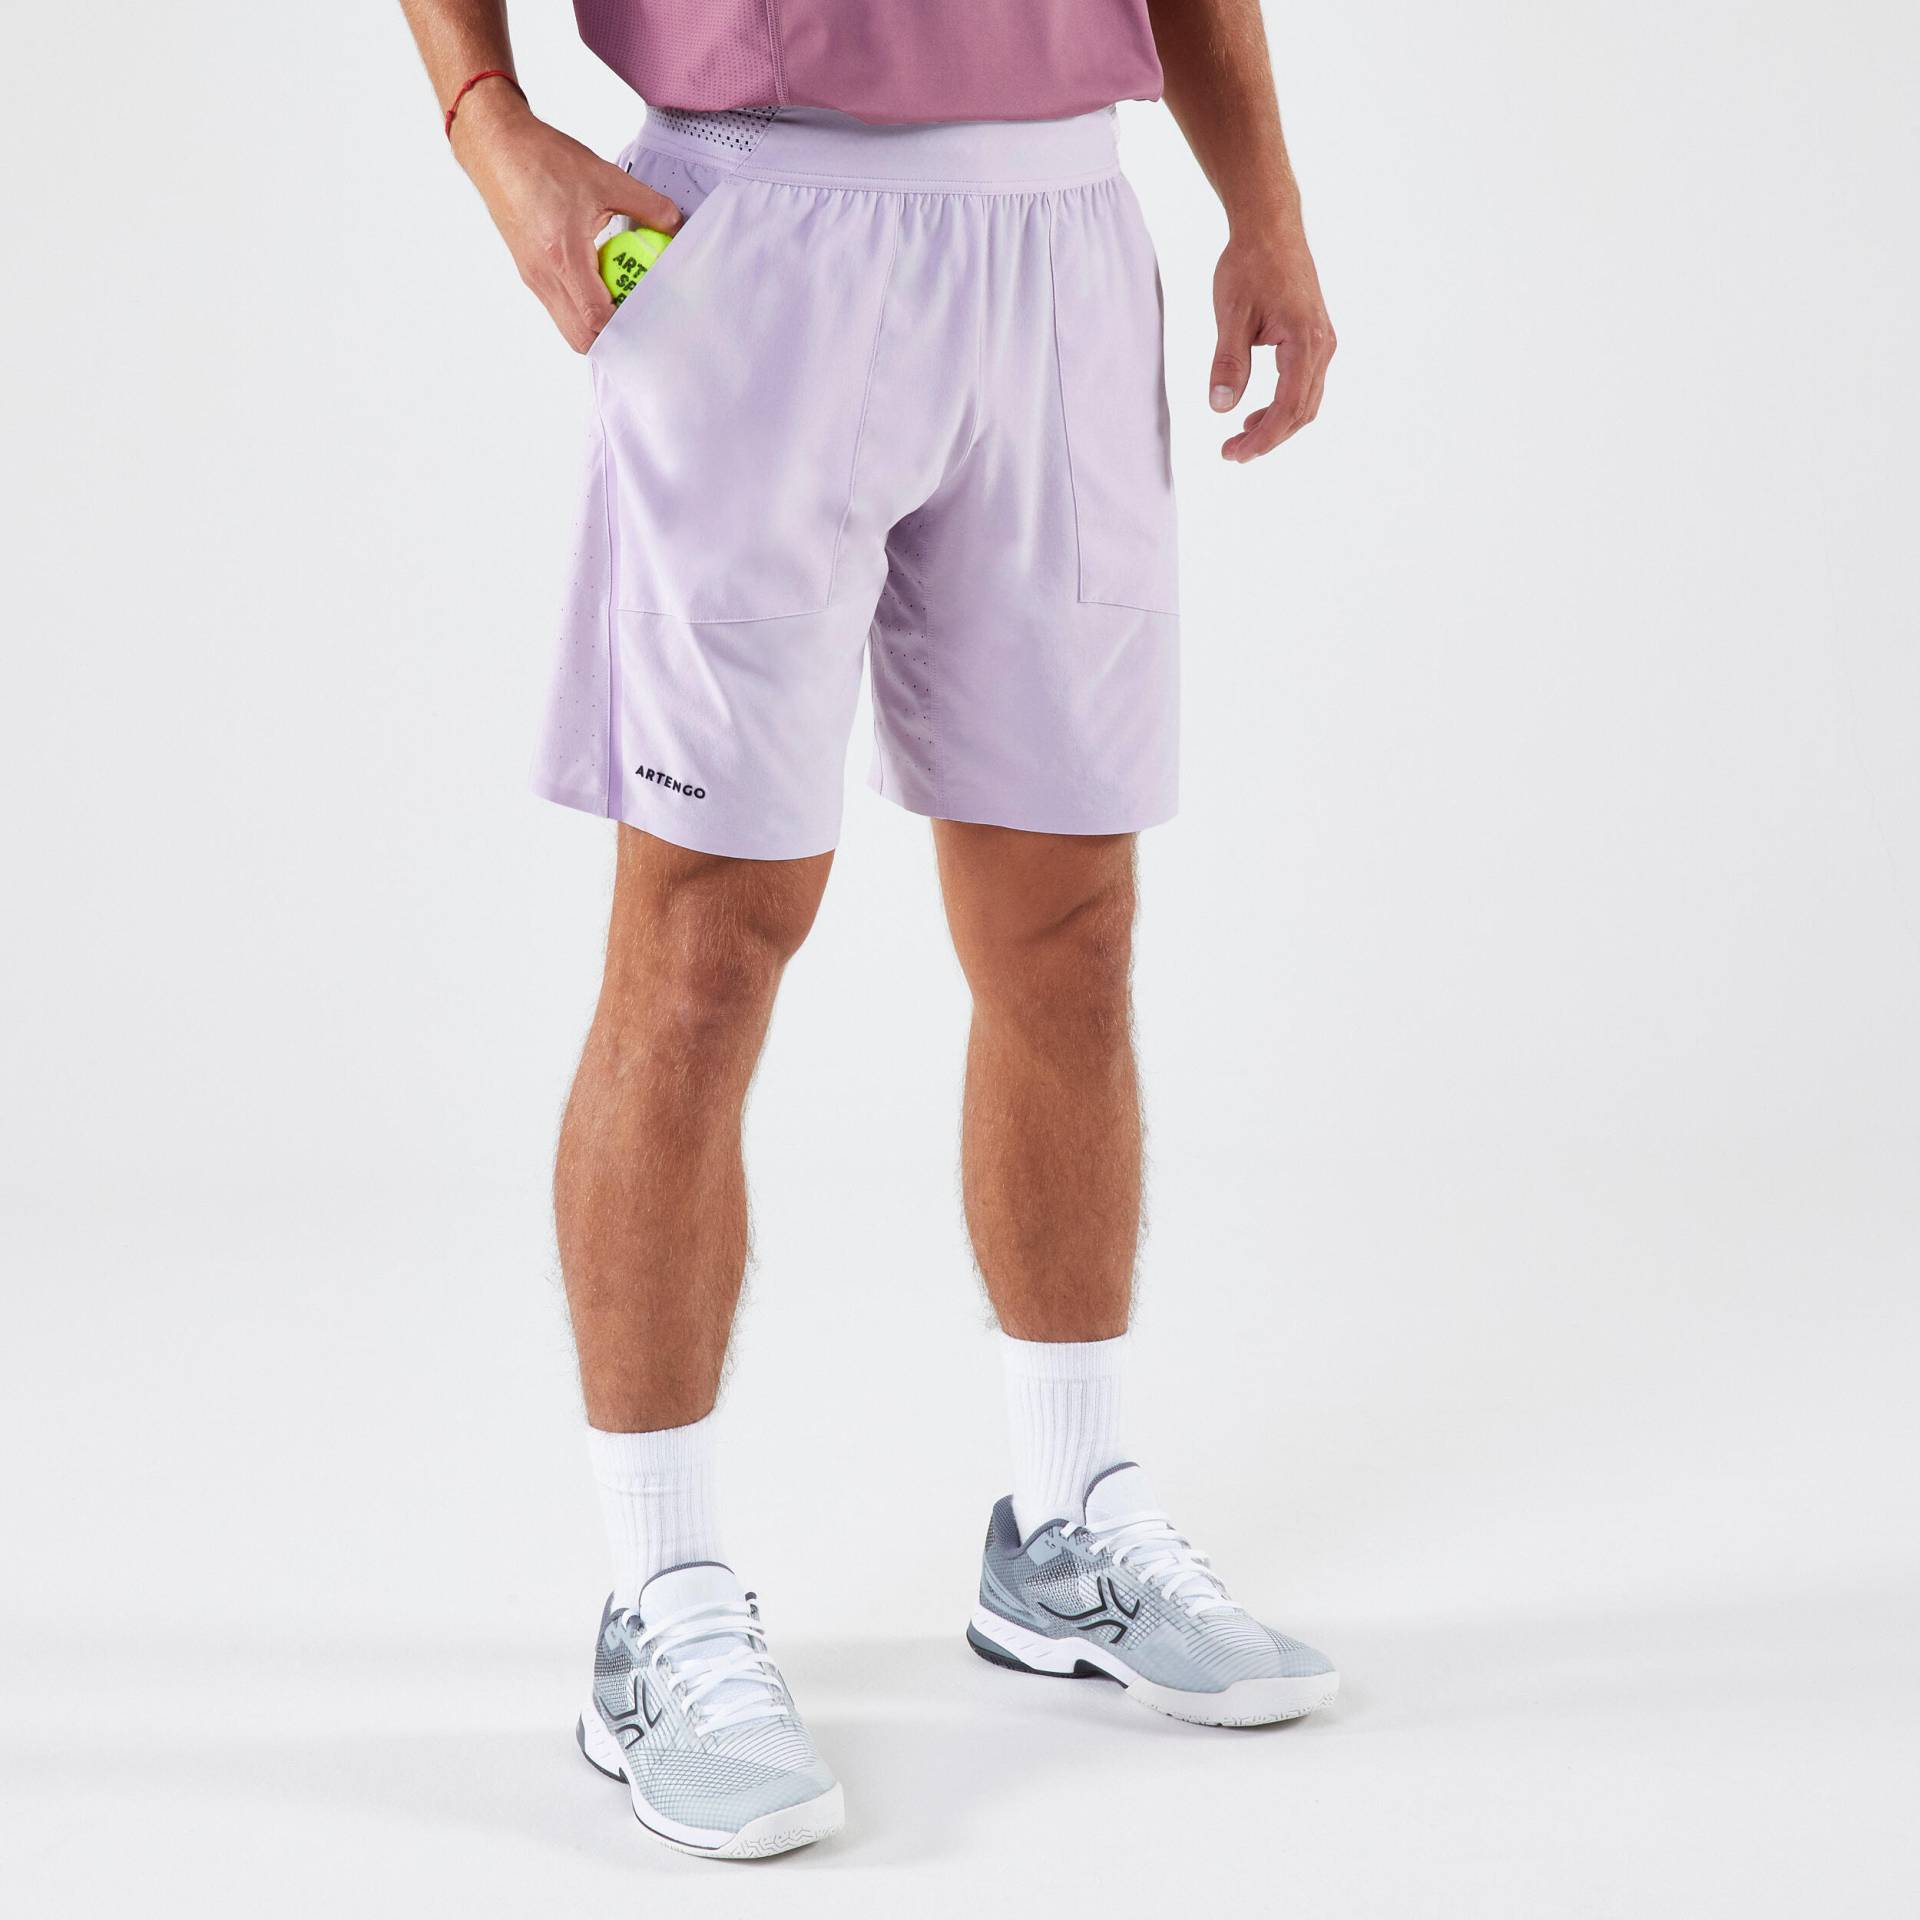 Herren Tennisshorts atmungsaktiv - Artengo Dry+ Violett Gaël Monfils von ARTENGO